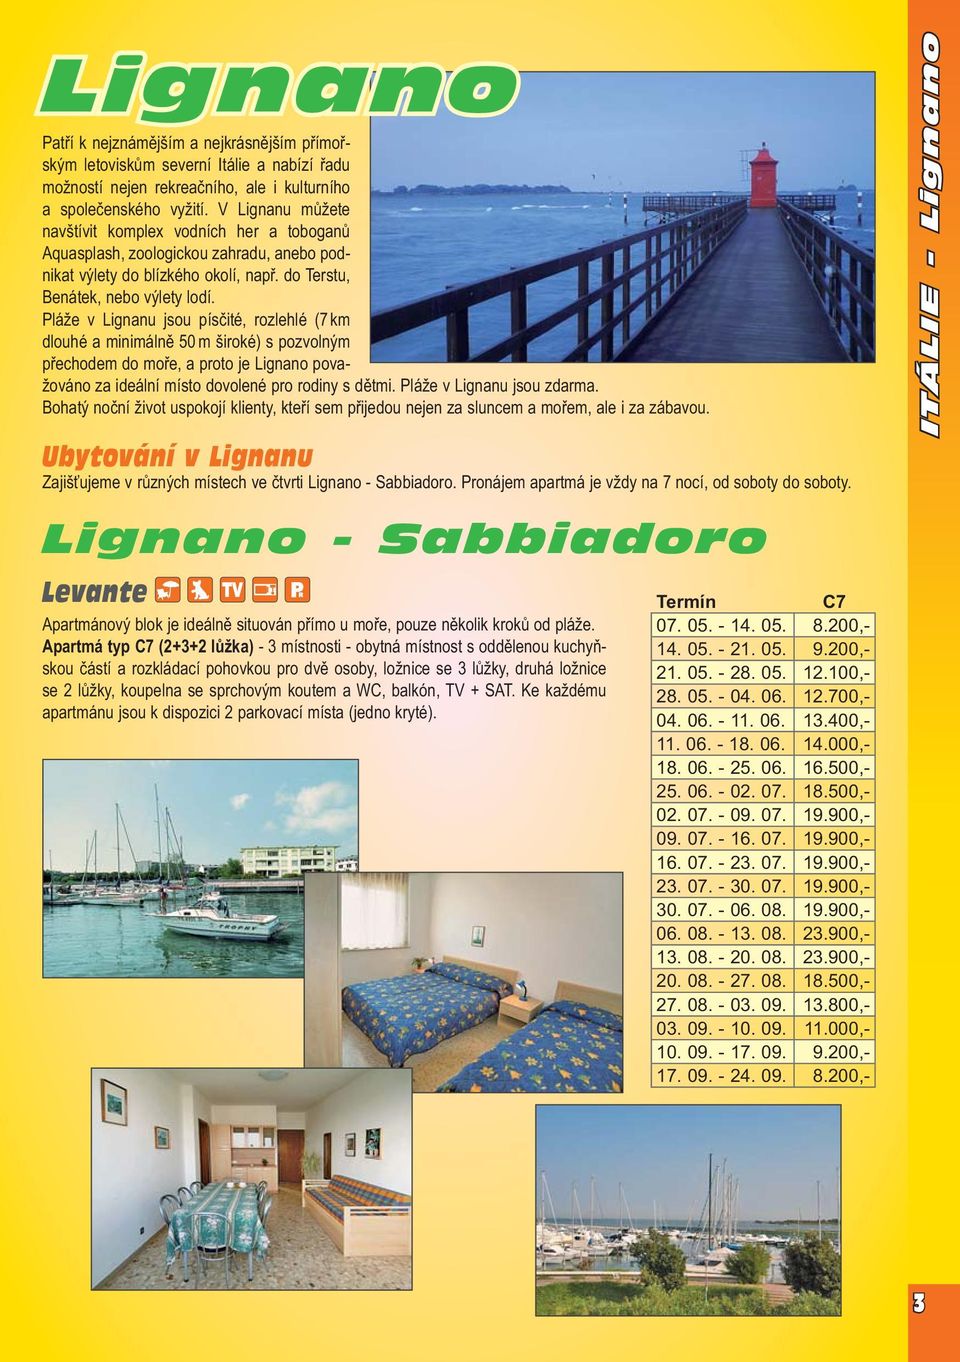 Pláže v Lignanu jsou písčité, rozlehlé (7 km dlouhé a minimálně 50 m široké) s pozvolným přechodem do moře, a proto je Lignano považováno za ideální místo dovolené pro rodiny s dětmi.